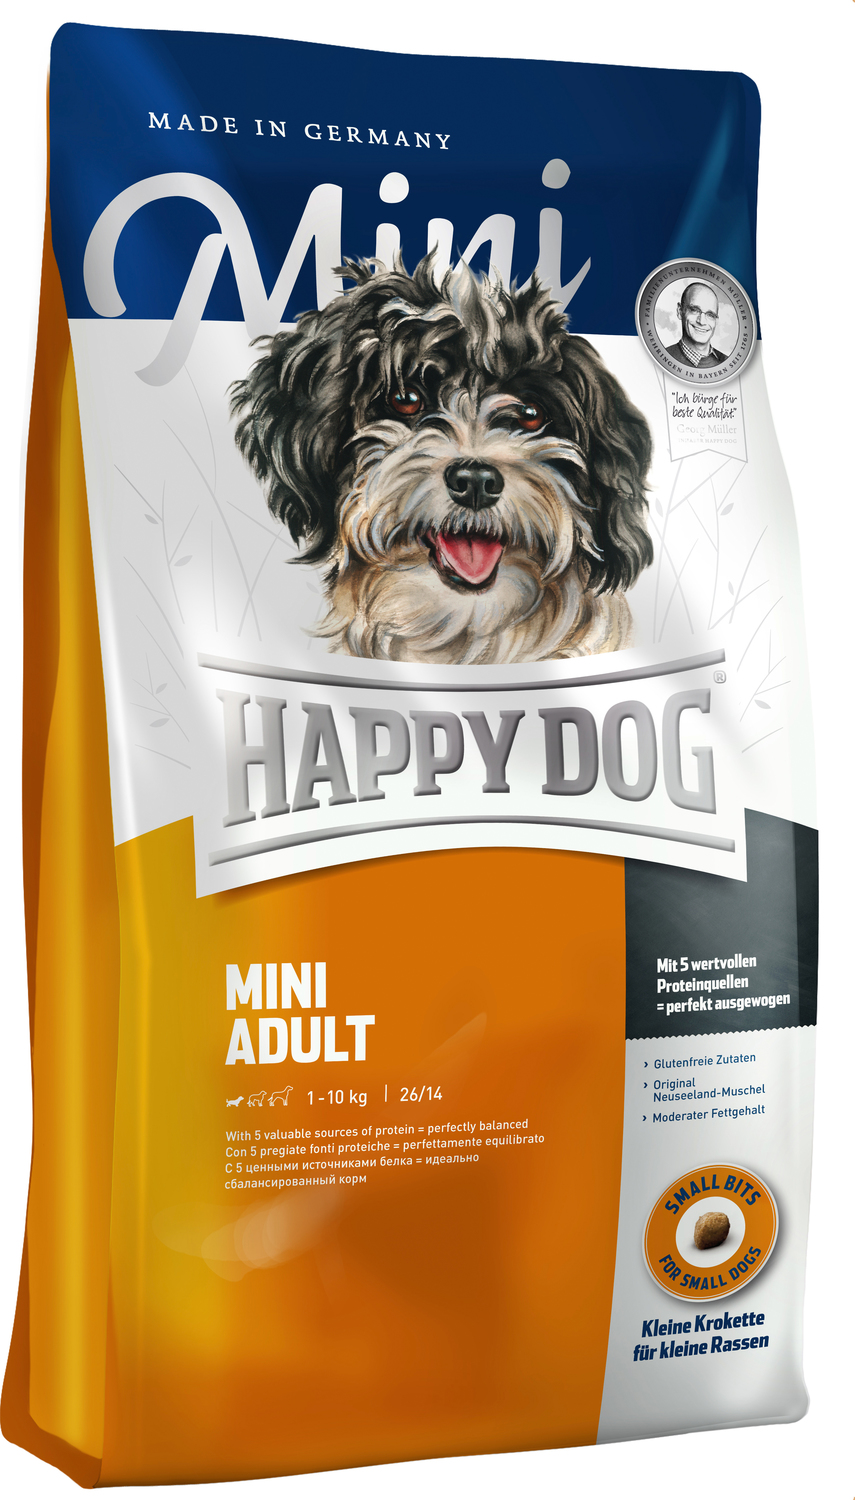 Happy Dog Fit & Vital Mini Adult | Pentru câini adulți de talie mică - zoom